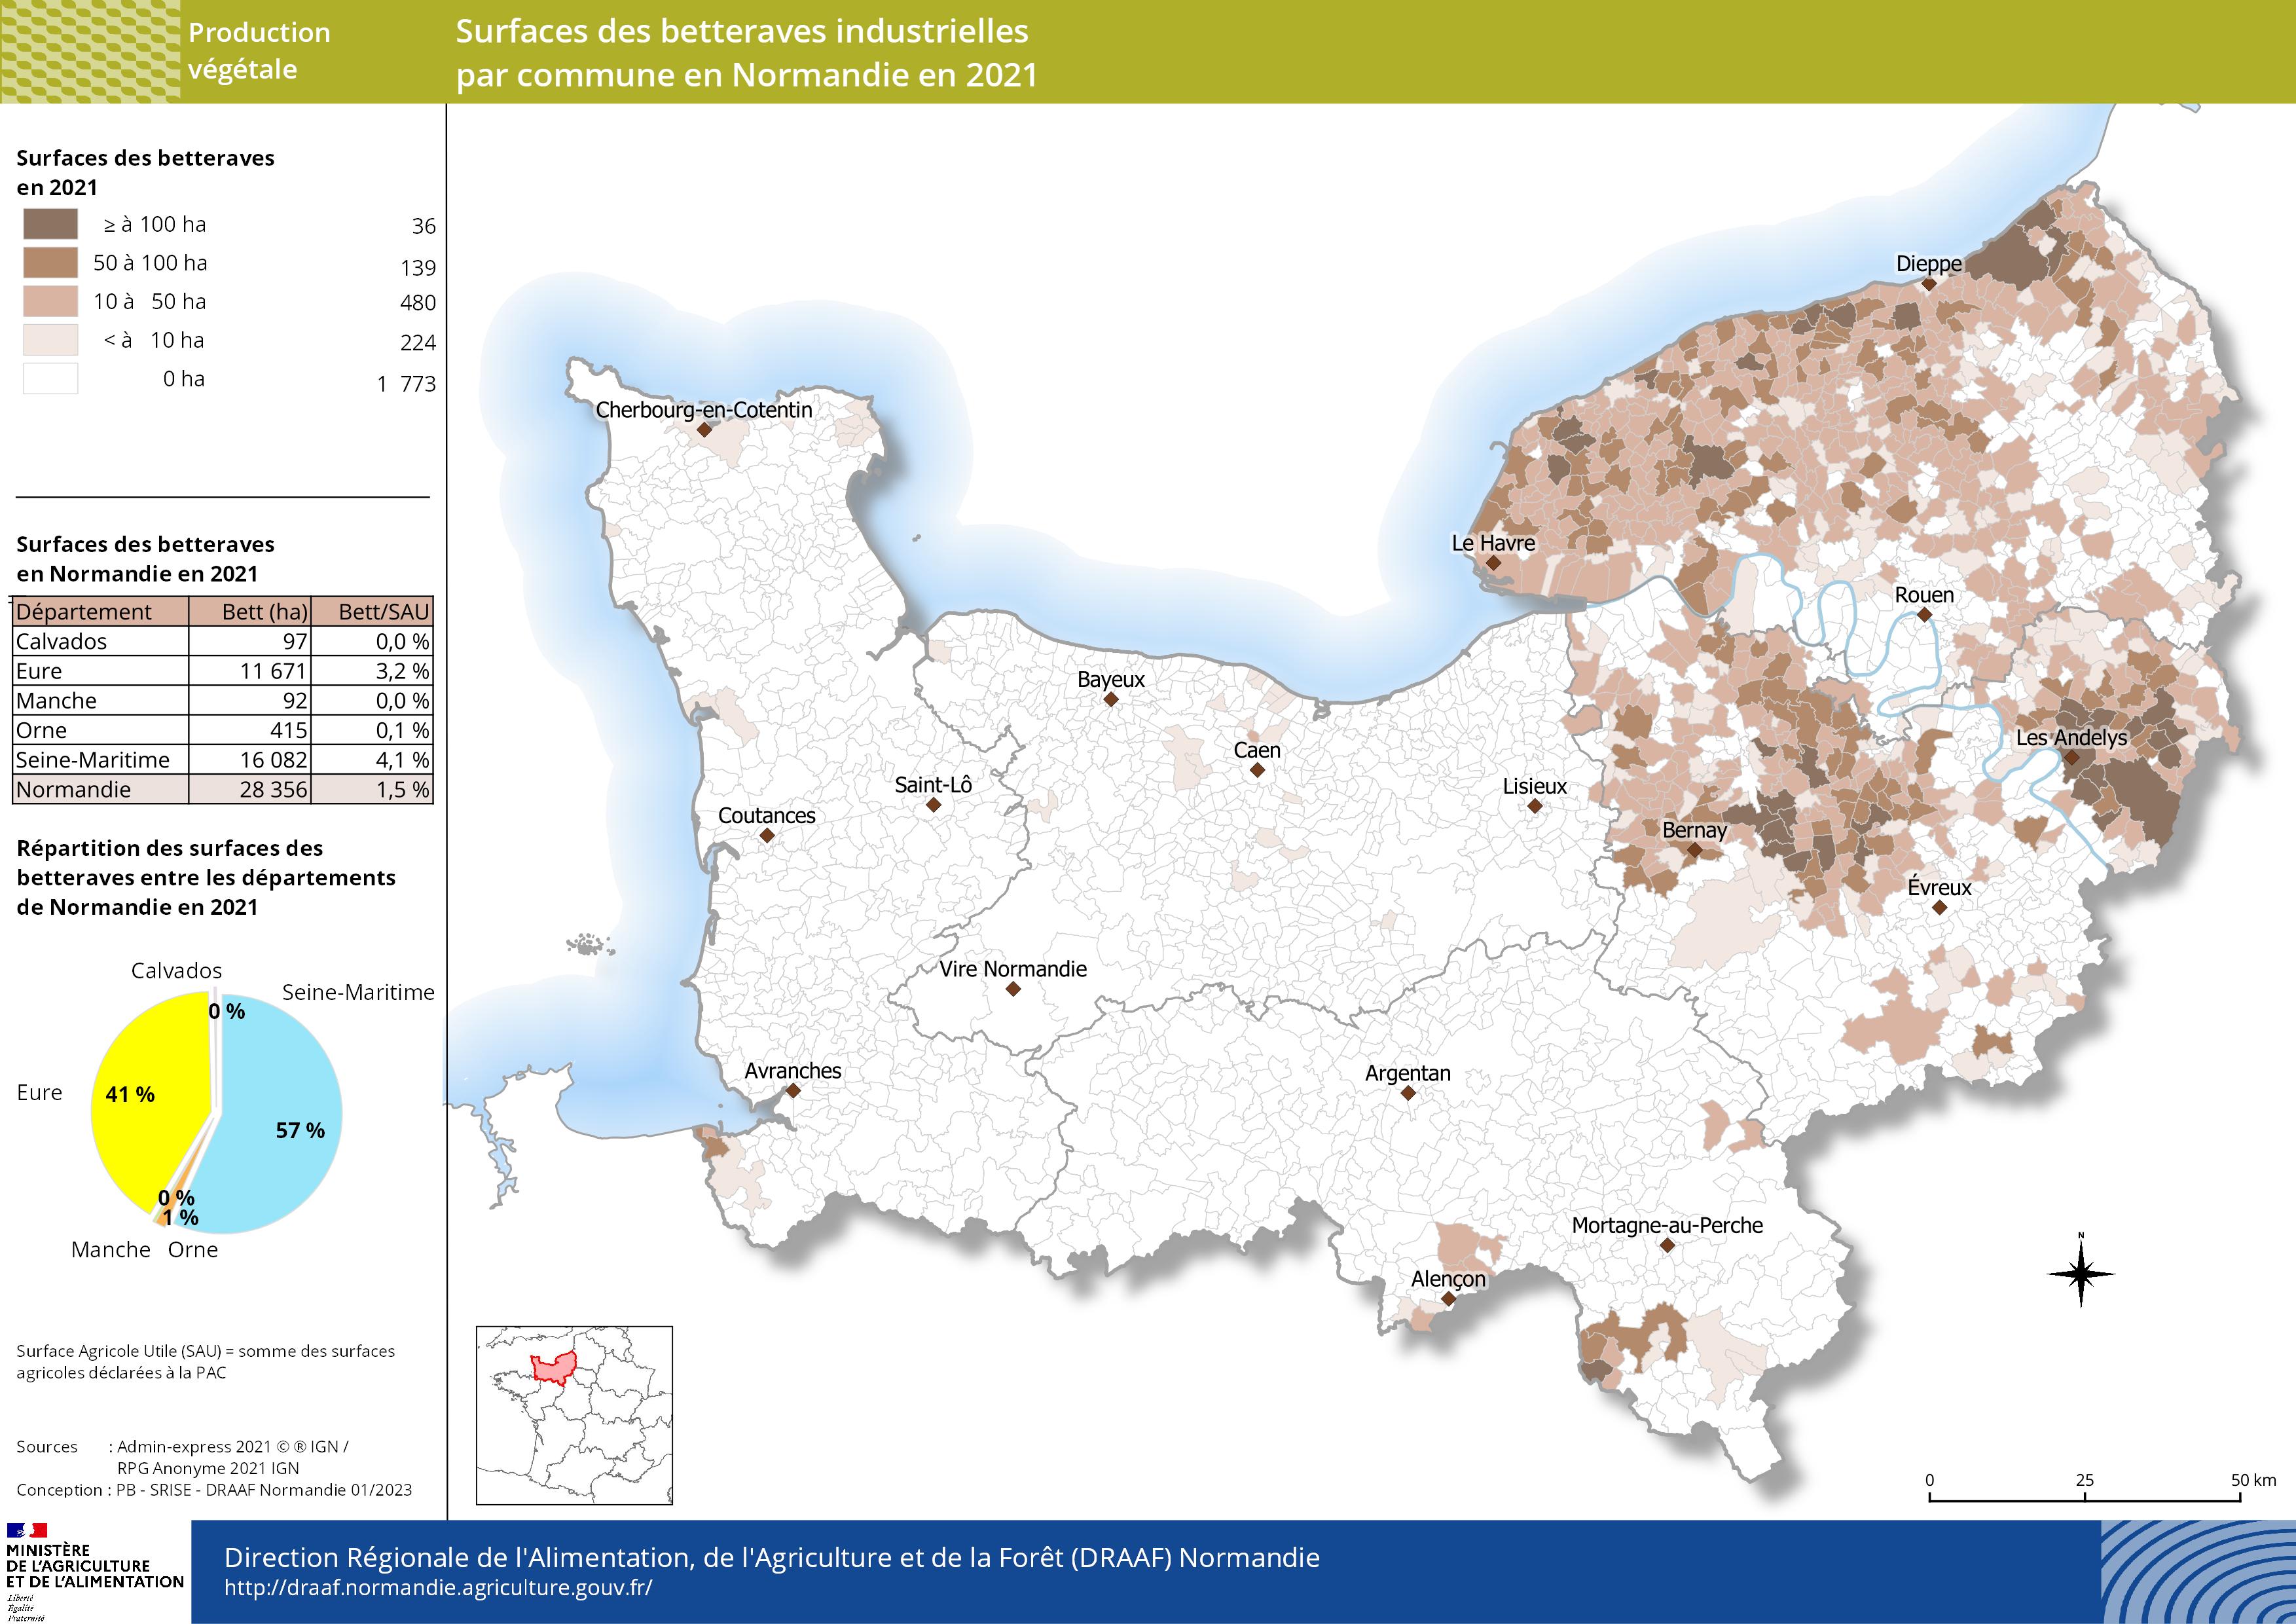 carte représentant les surfaces des betteraves industrielles par commune en Normandie en 2021